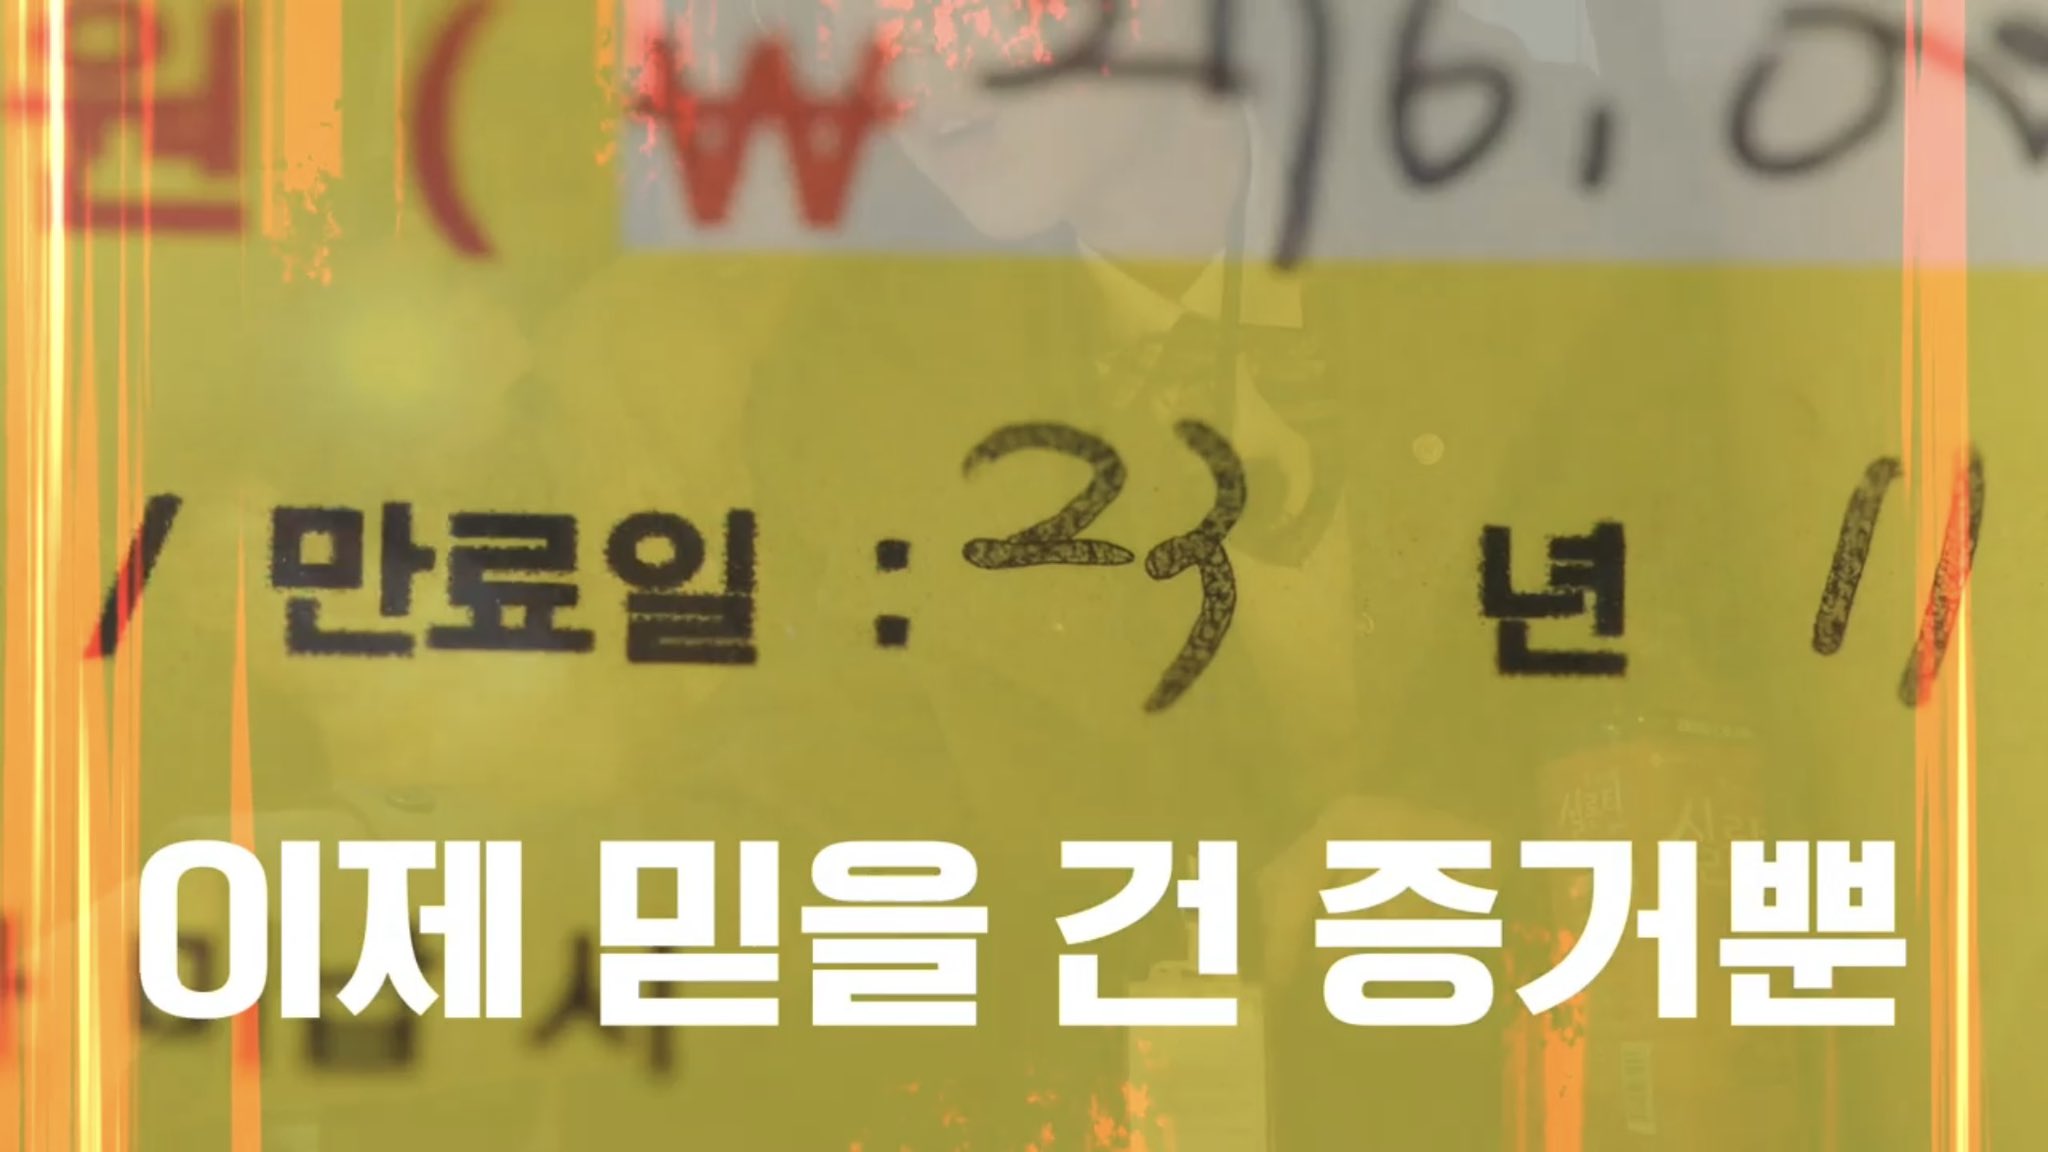 '276,000원 / 만료일 23년 11월 / 미납 시'.